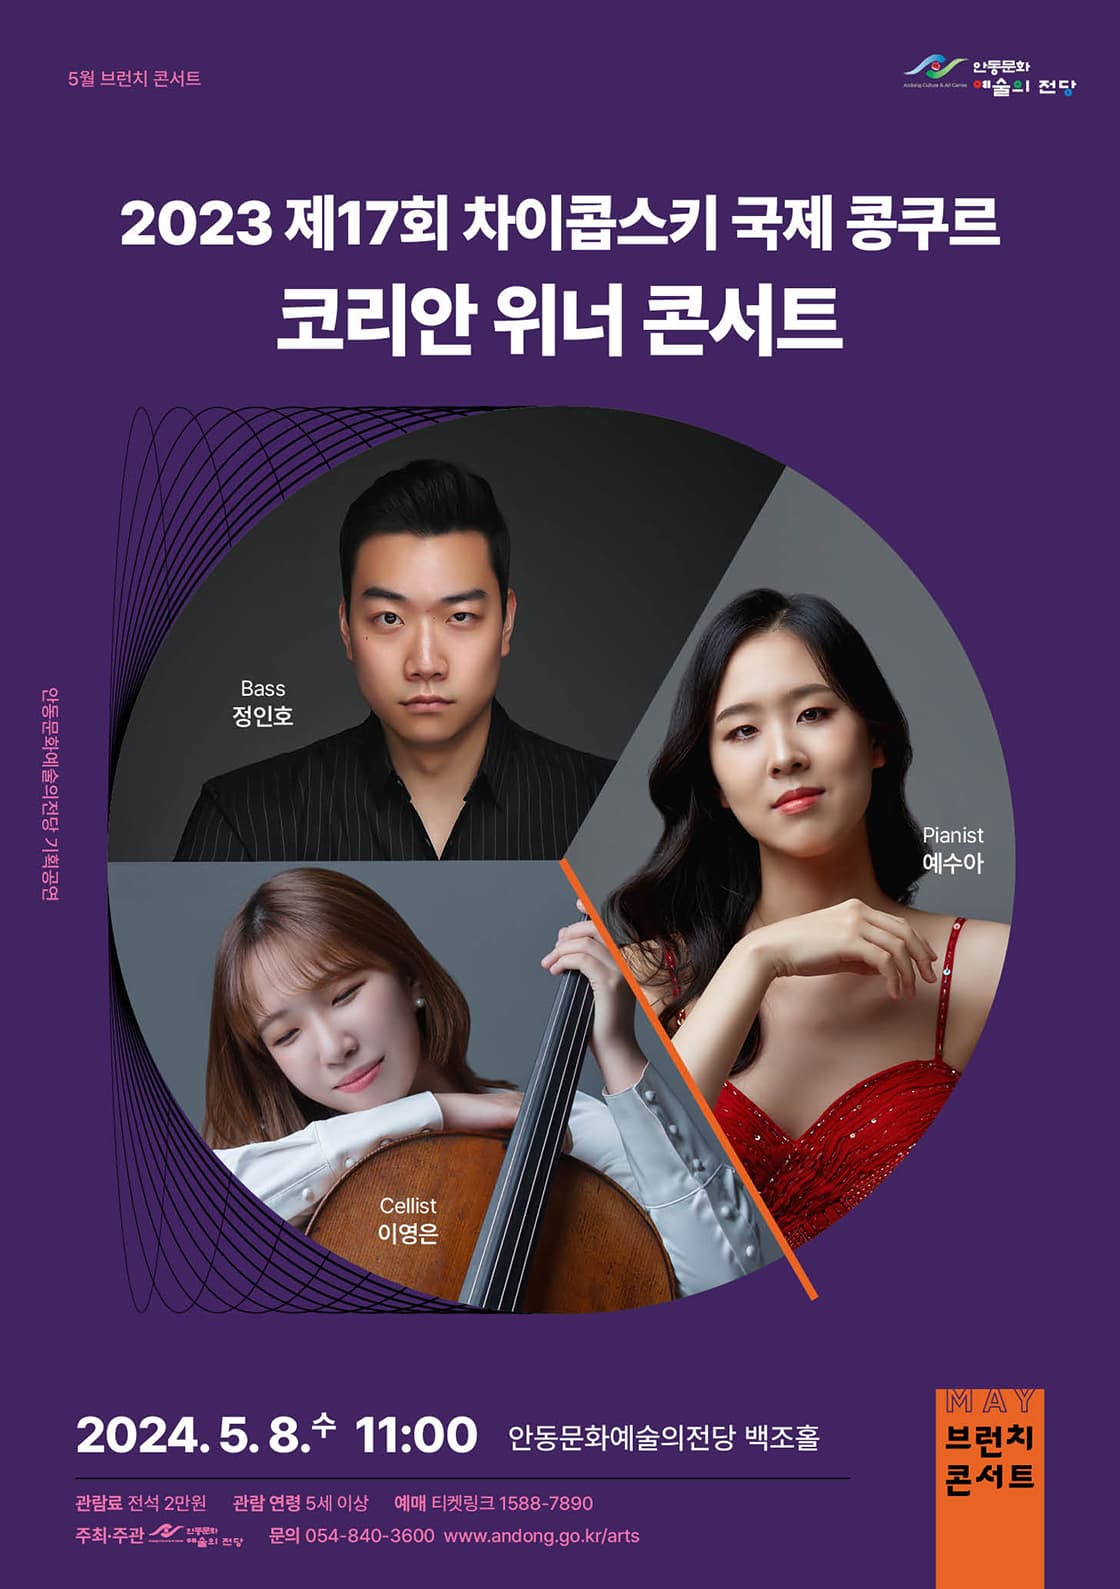 [안동] 브런치 콘서트, 2023차이콥스키콩쿠르 한국인 수상자 초청 공연 콘서트